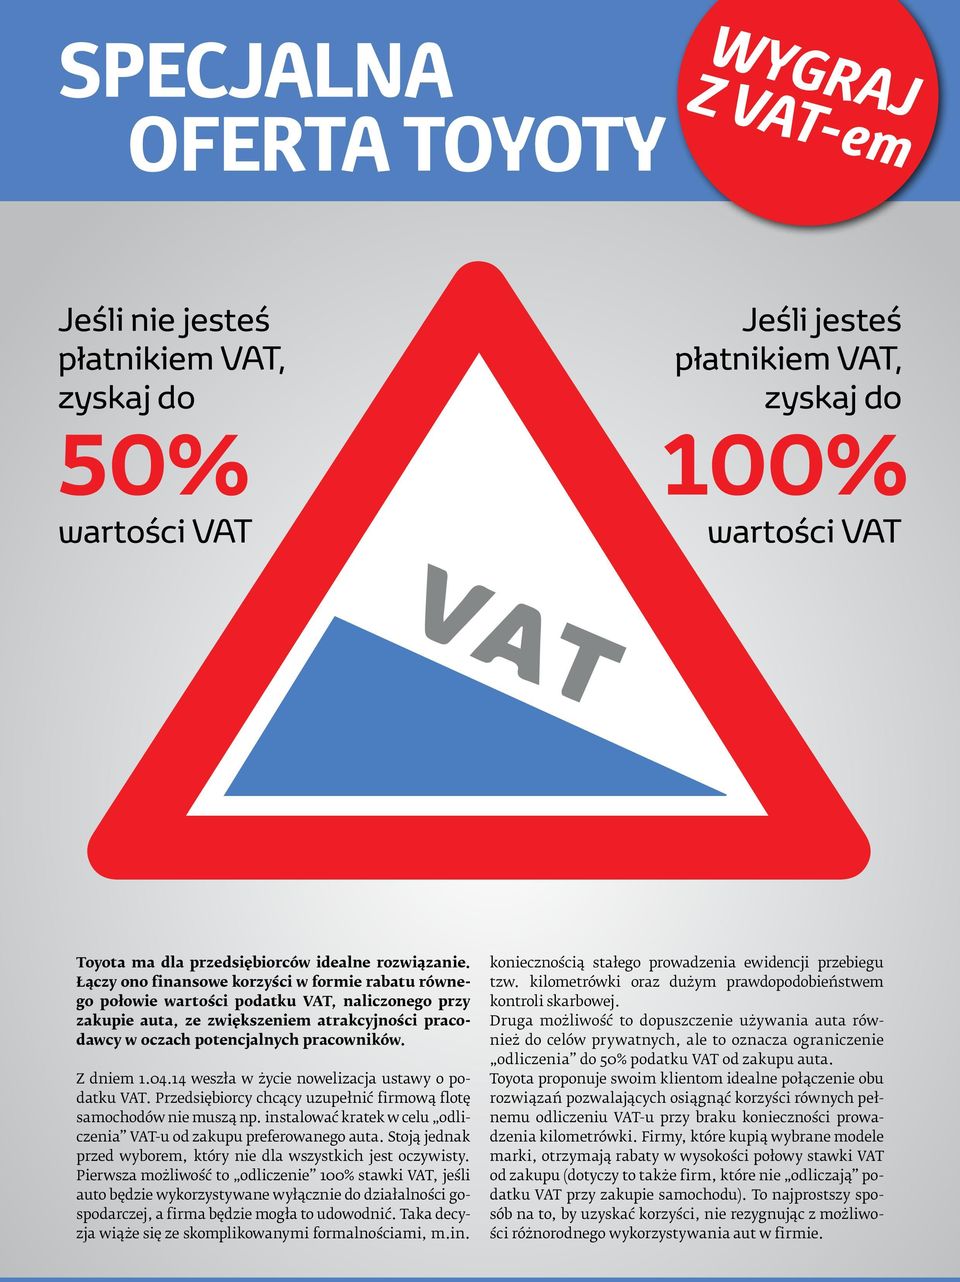 Łączy ono finansowe korzyści w formie rabatu równego połowie wartości podatku VAT, naliczonego przy zakupie auta, ze zwiększeniem atrakcyjności pracodawcy w oczach potencjalnych pracowników.